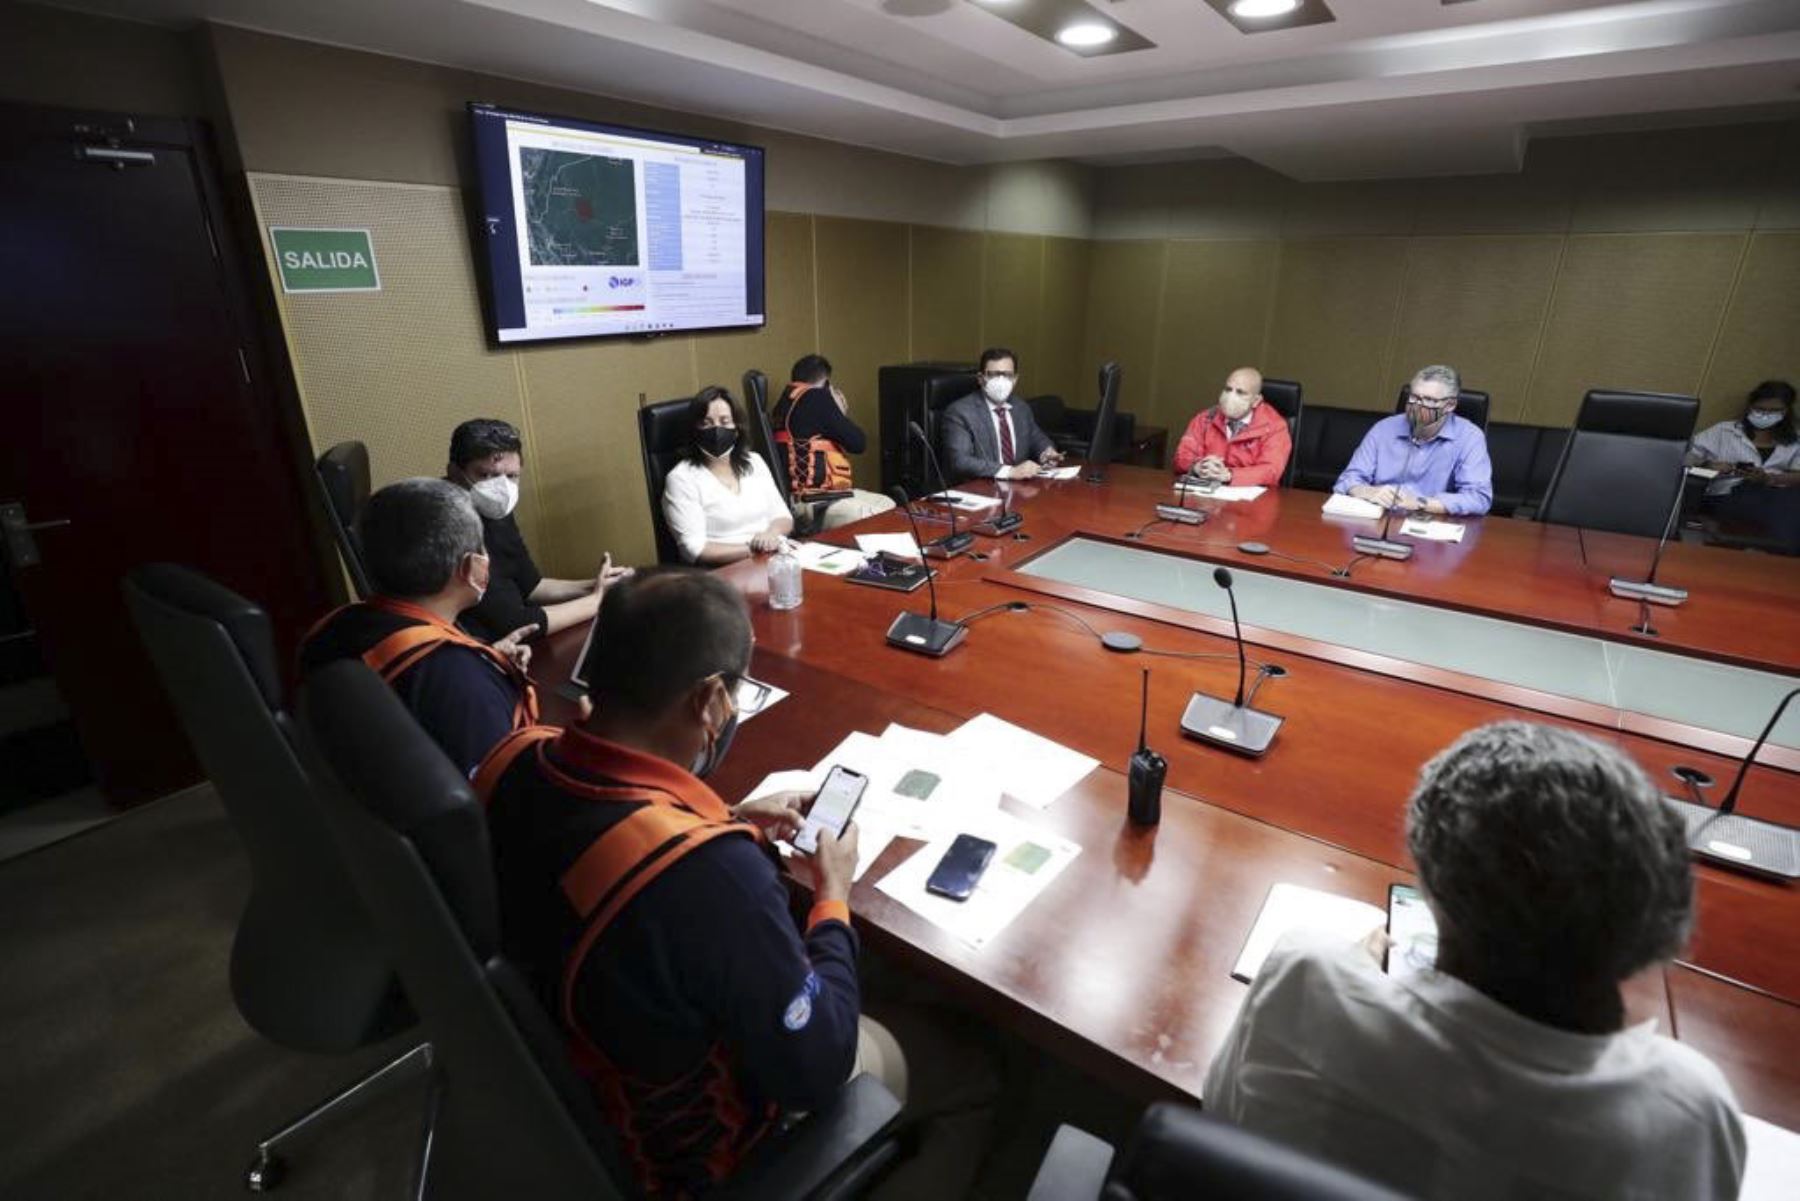 El ministro de Cultura, Alejandro Salas, participa en reunión de coordinación en el COEN tras fuerte sismo en Amazonas. Foto: ANDINA/Difusión